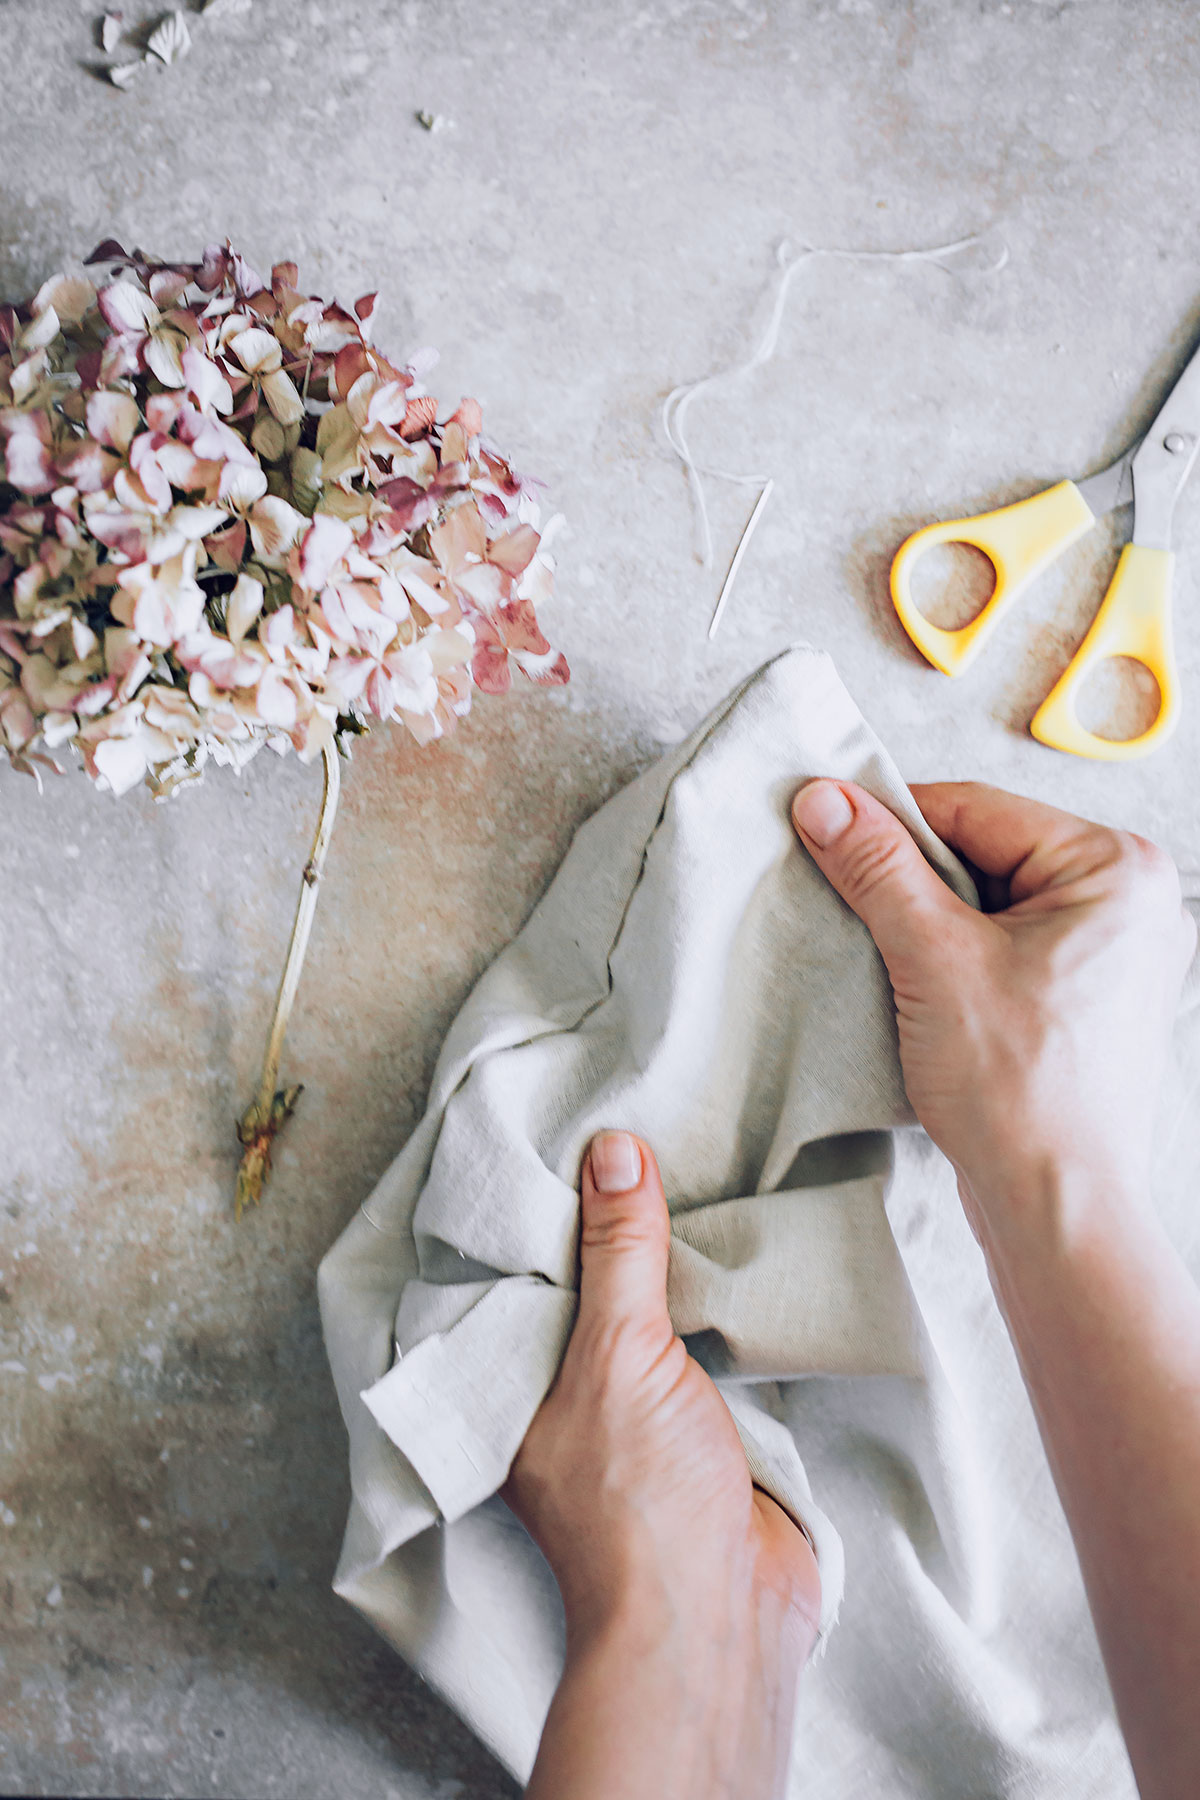 How to make cloth napkins